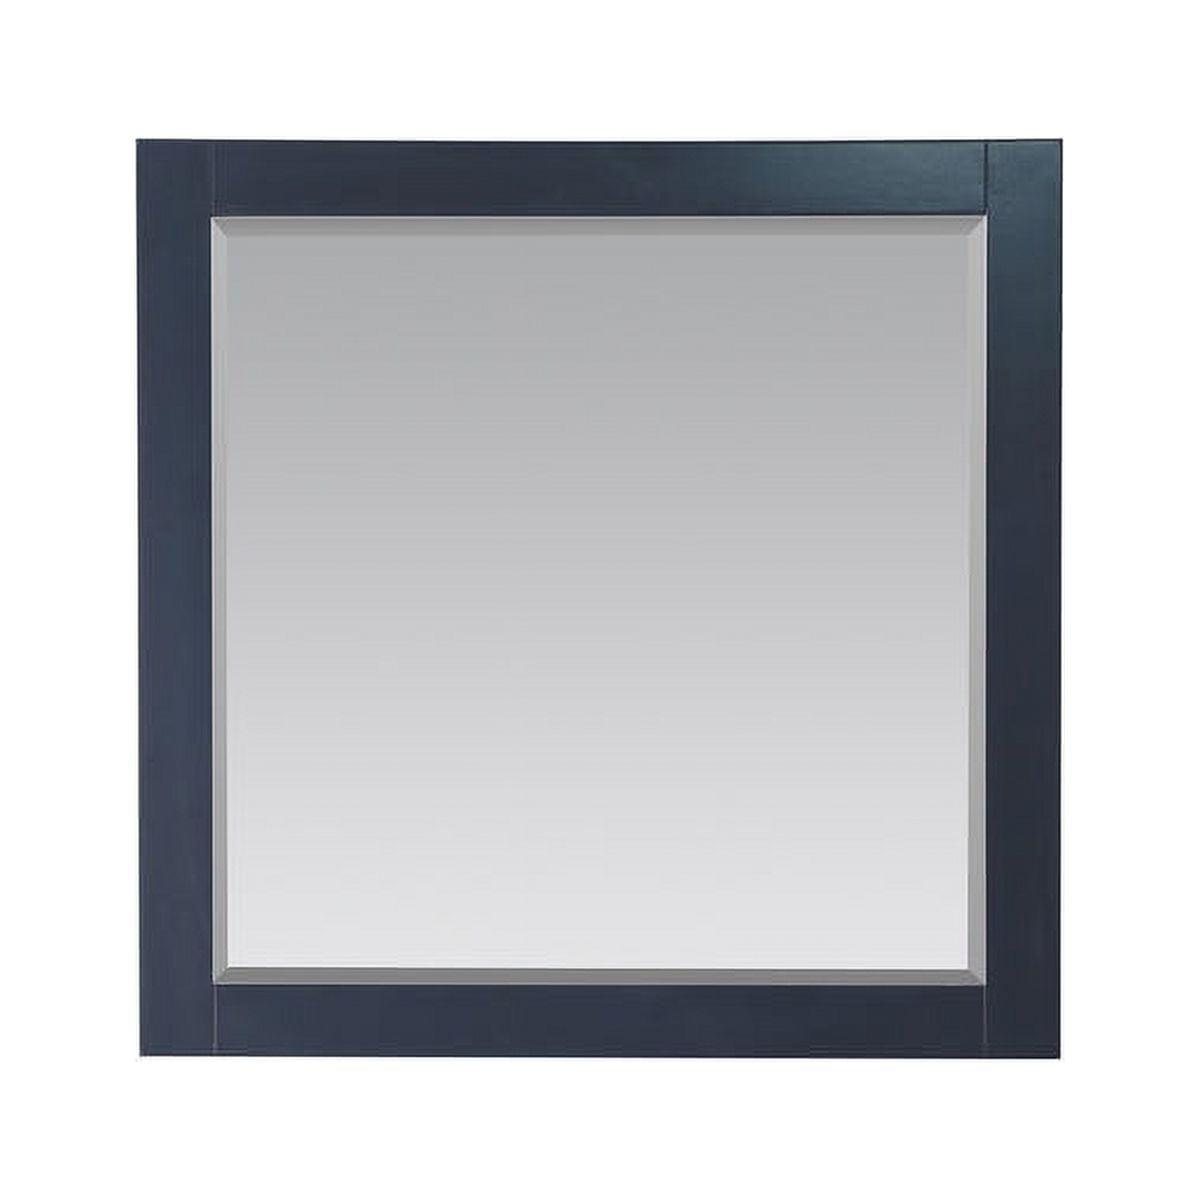 Elegant 34" Rectangular Silver Wood Bathroom Wall Mirror